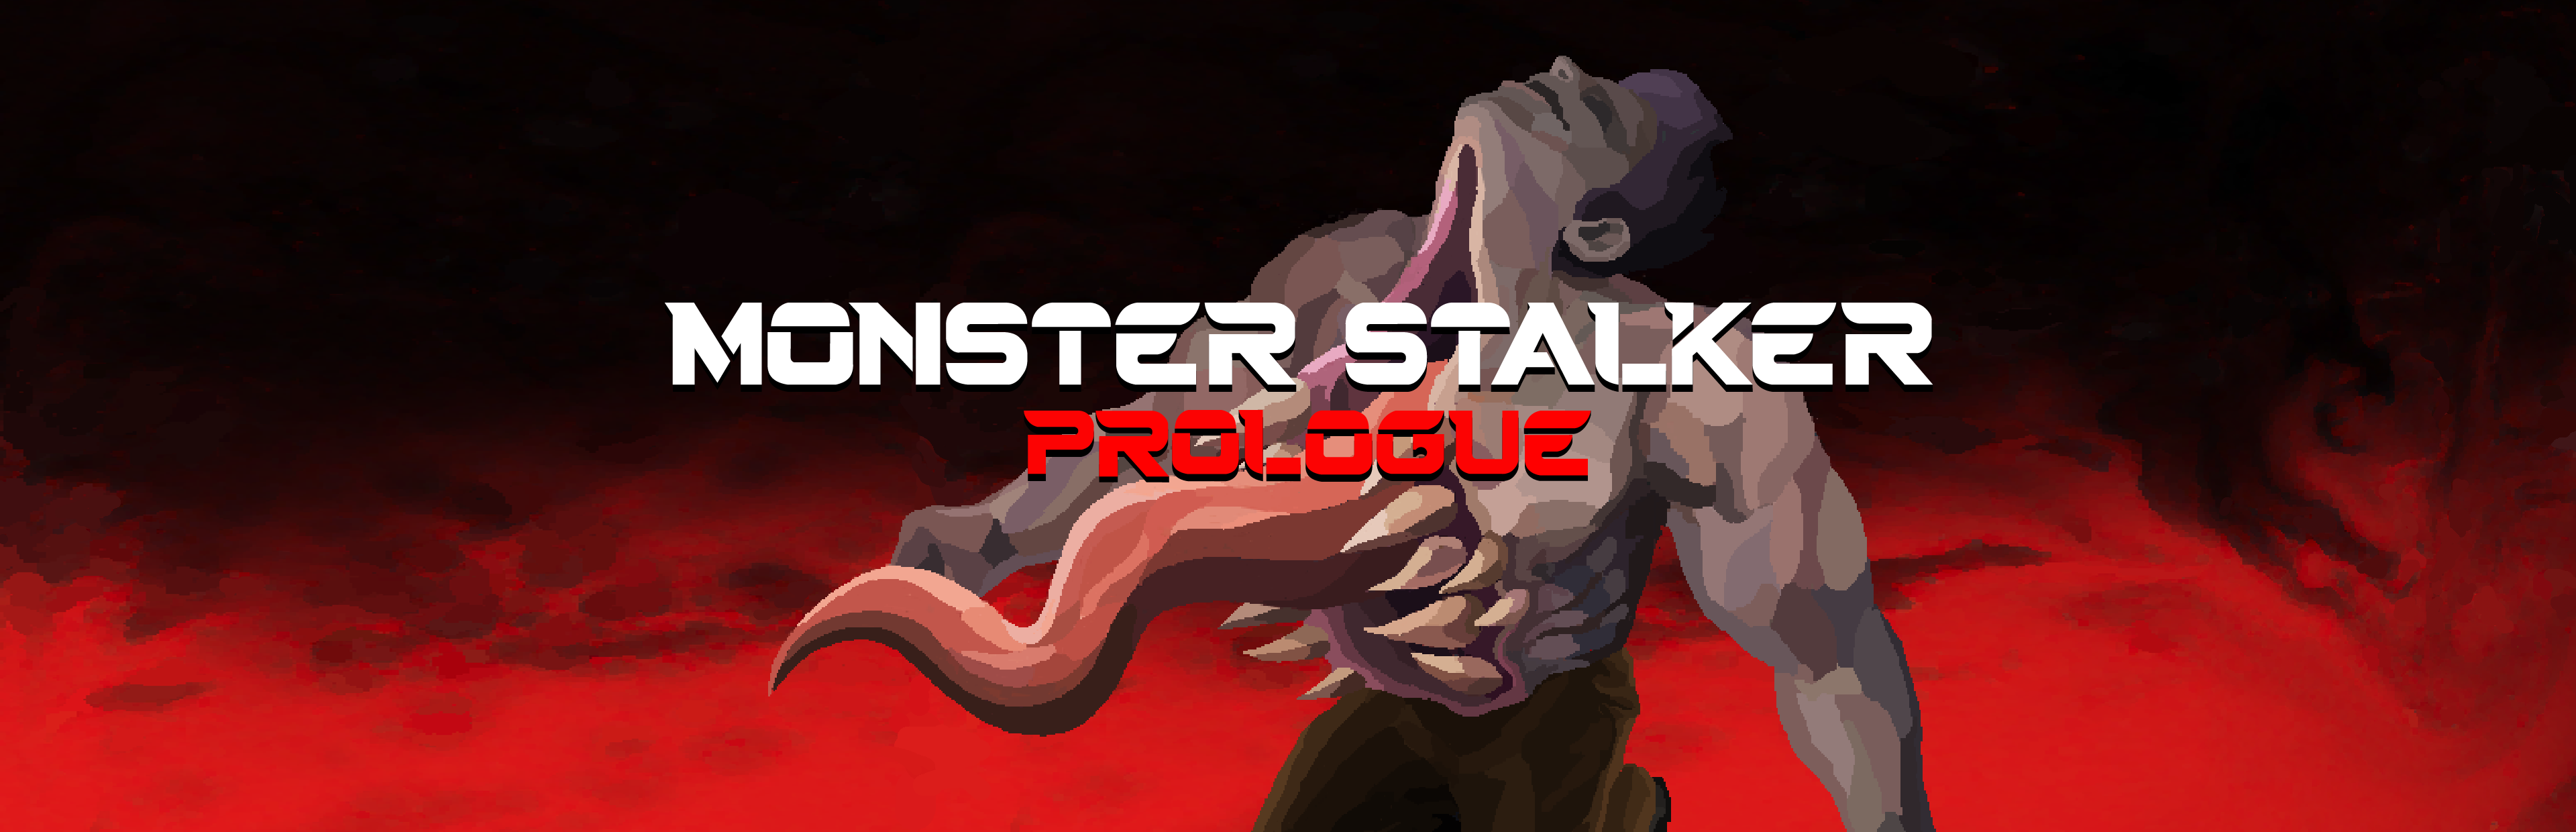 Monster Stalker Prologue Demo